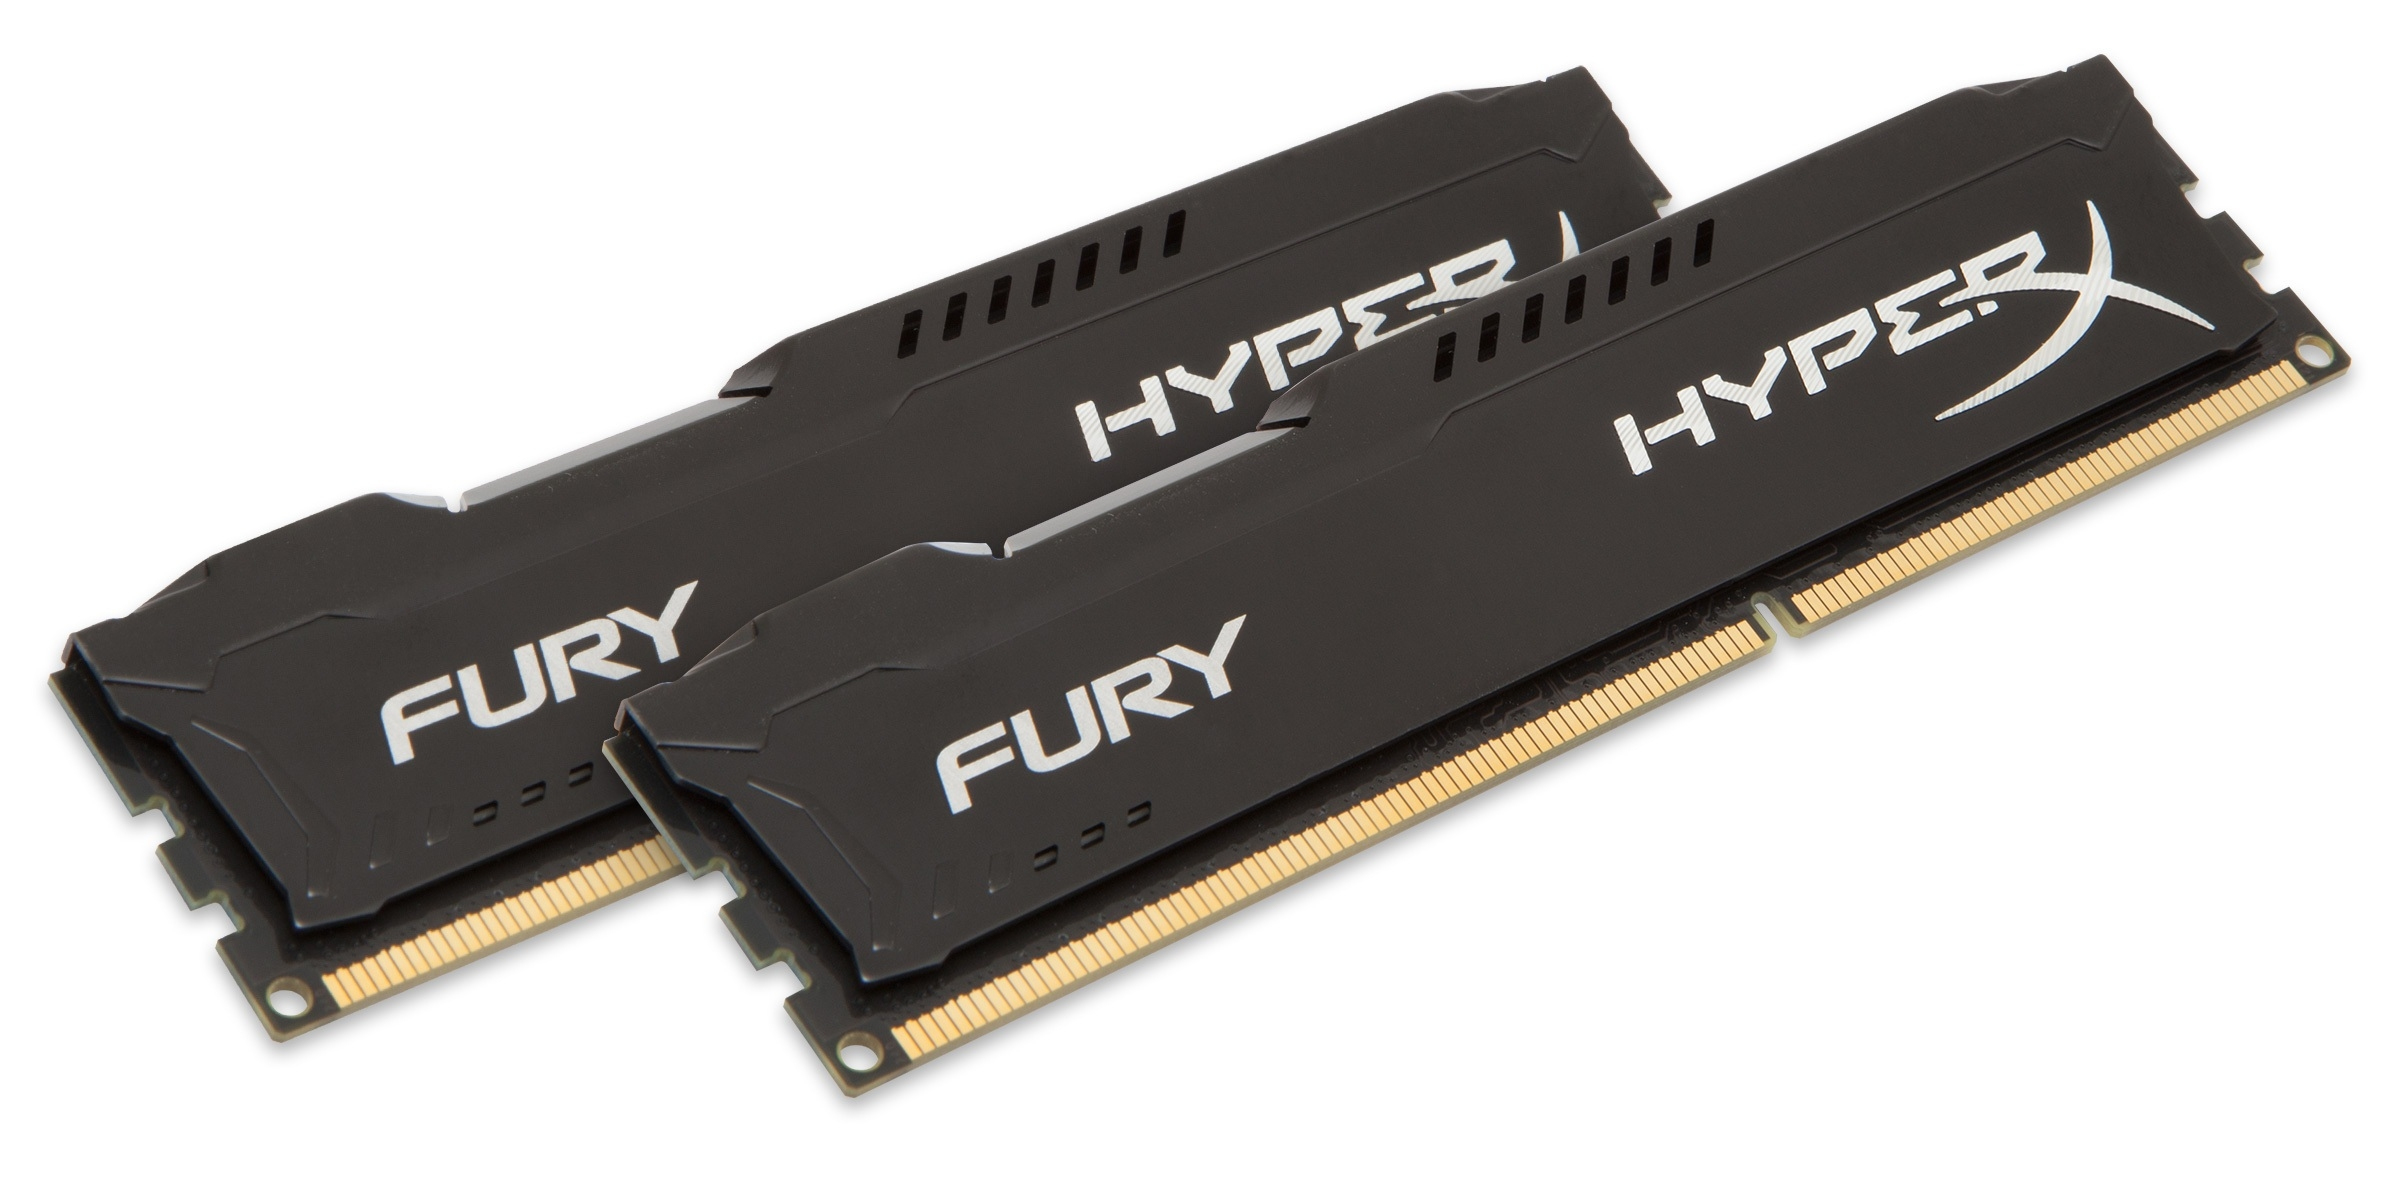 HyperX FURY Black 16GB 1866MHz DDR3